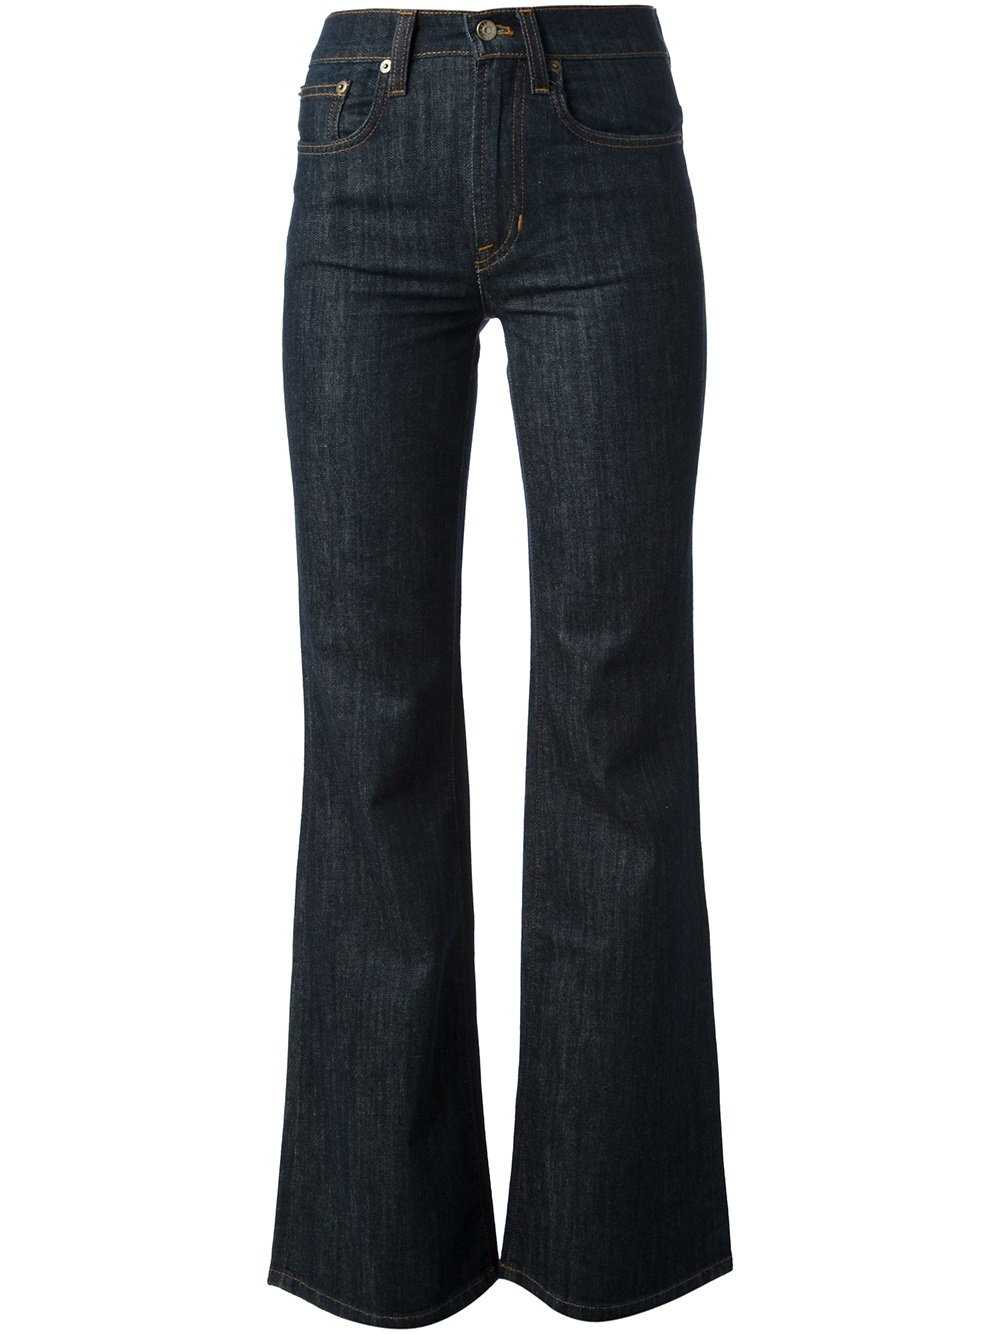 Ralph lauren womens bootcut jeans